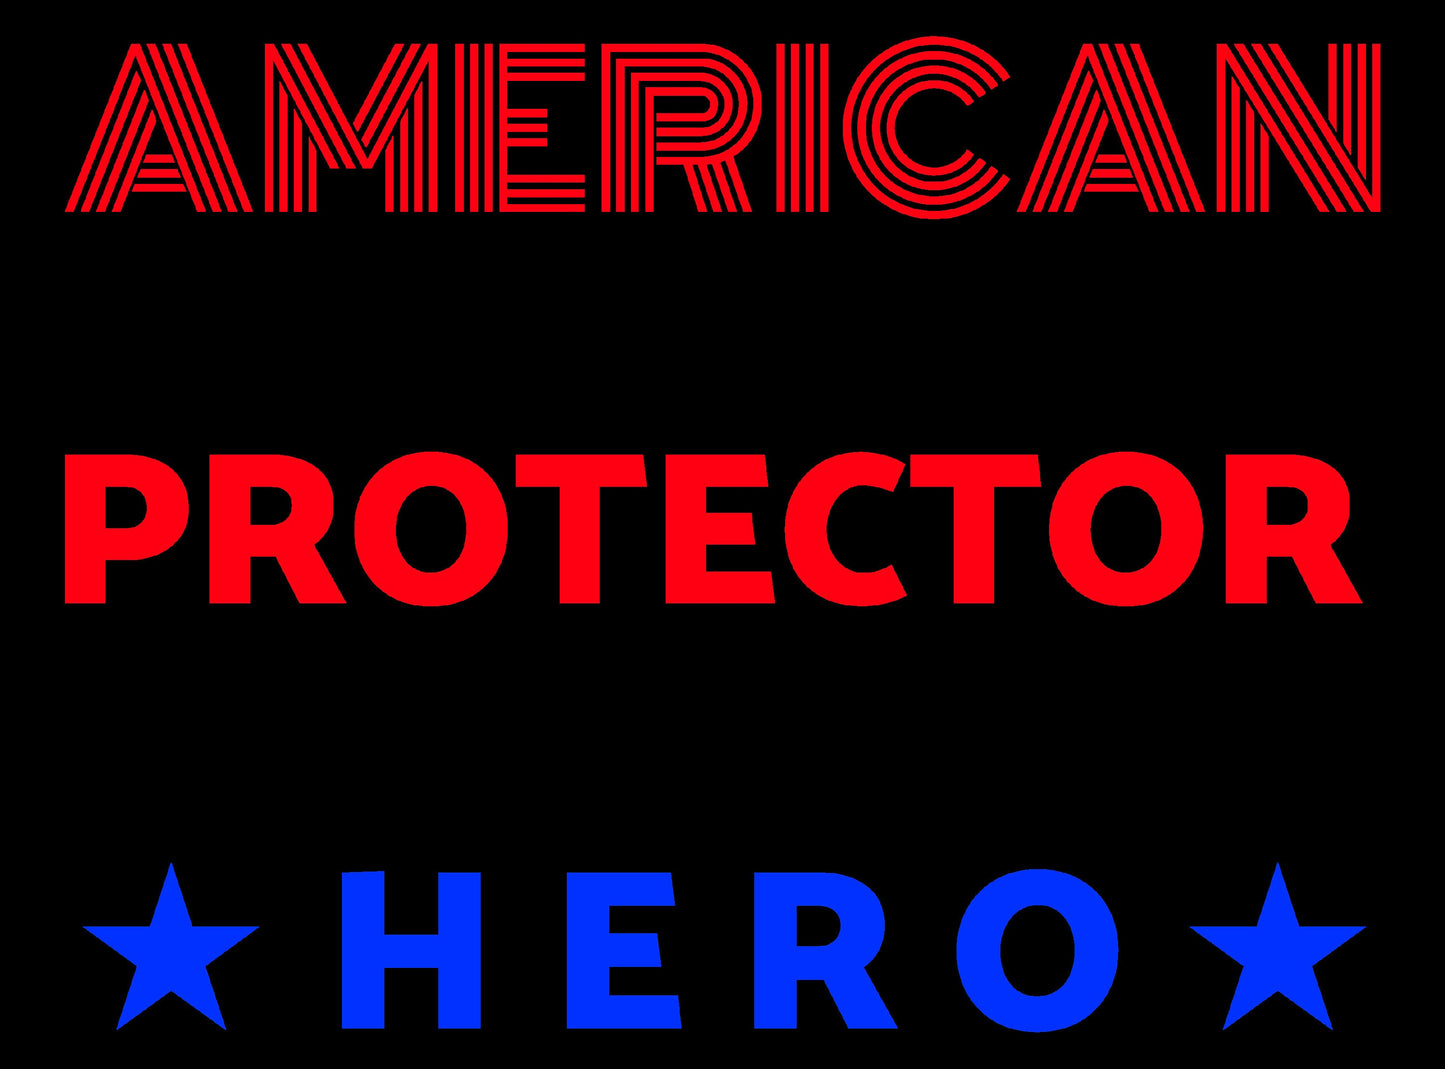 American Wife Protector Veteran Hero - PNG Digital Download for print